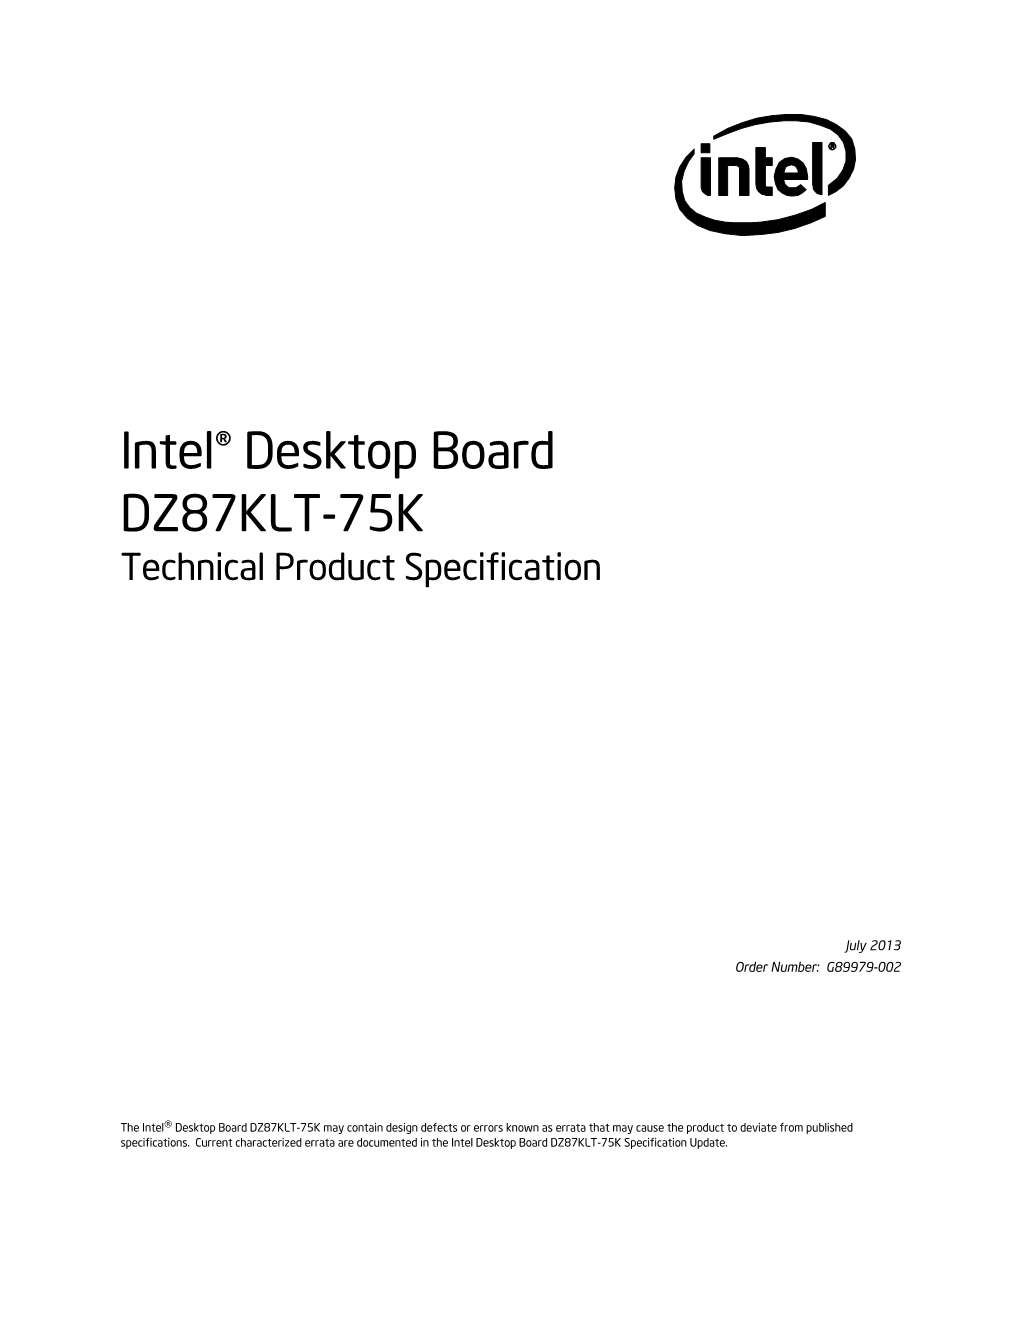 Intel® Desktop Board DZ87KLT-75K Technical Product Specification